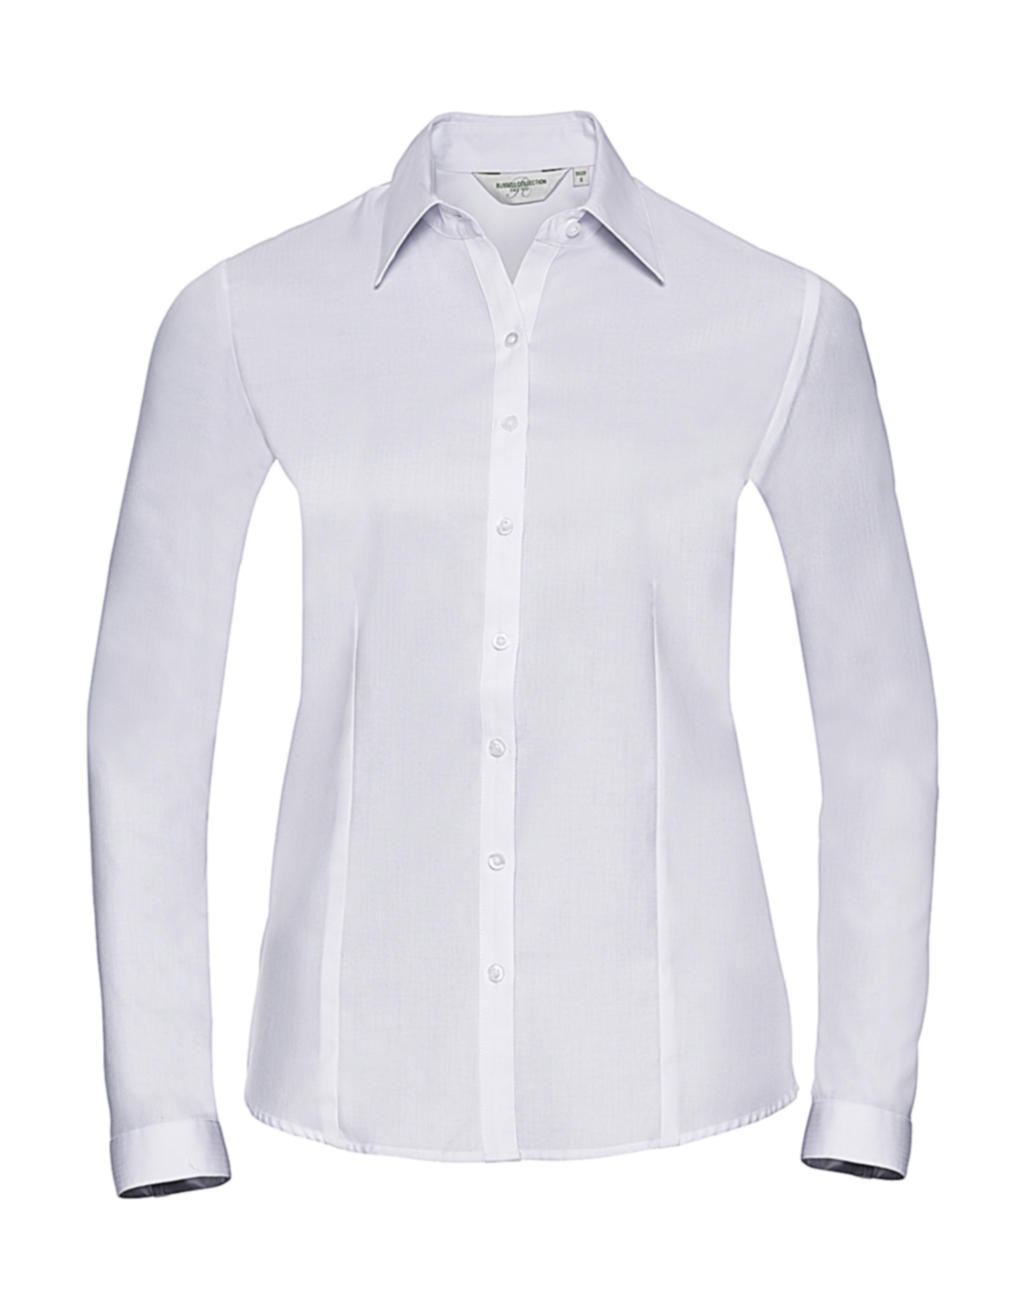  Ladies LS Herringbone Shirt in Farbe White